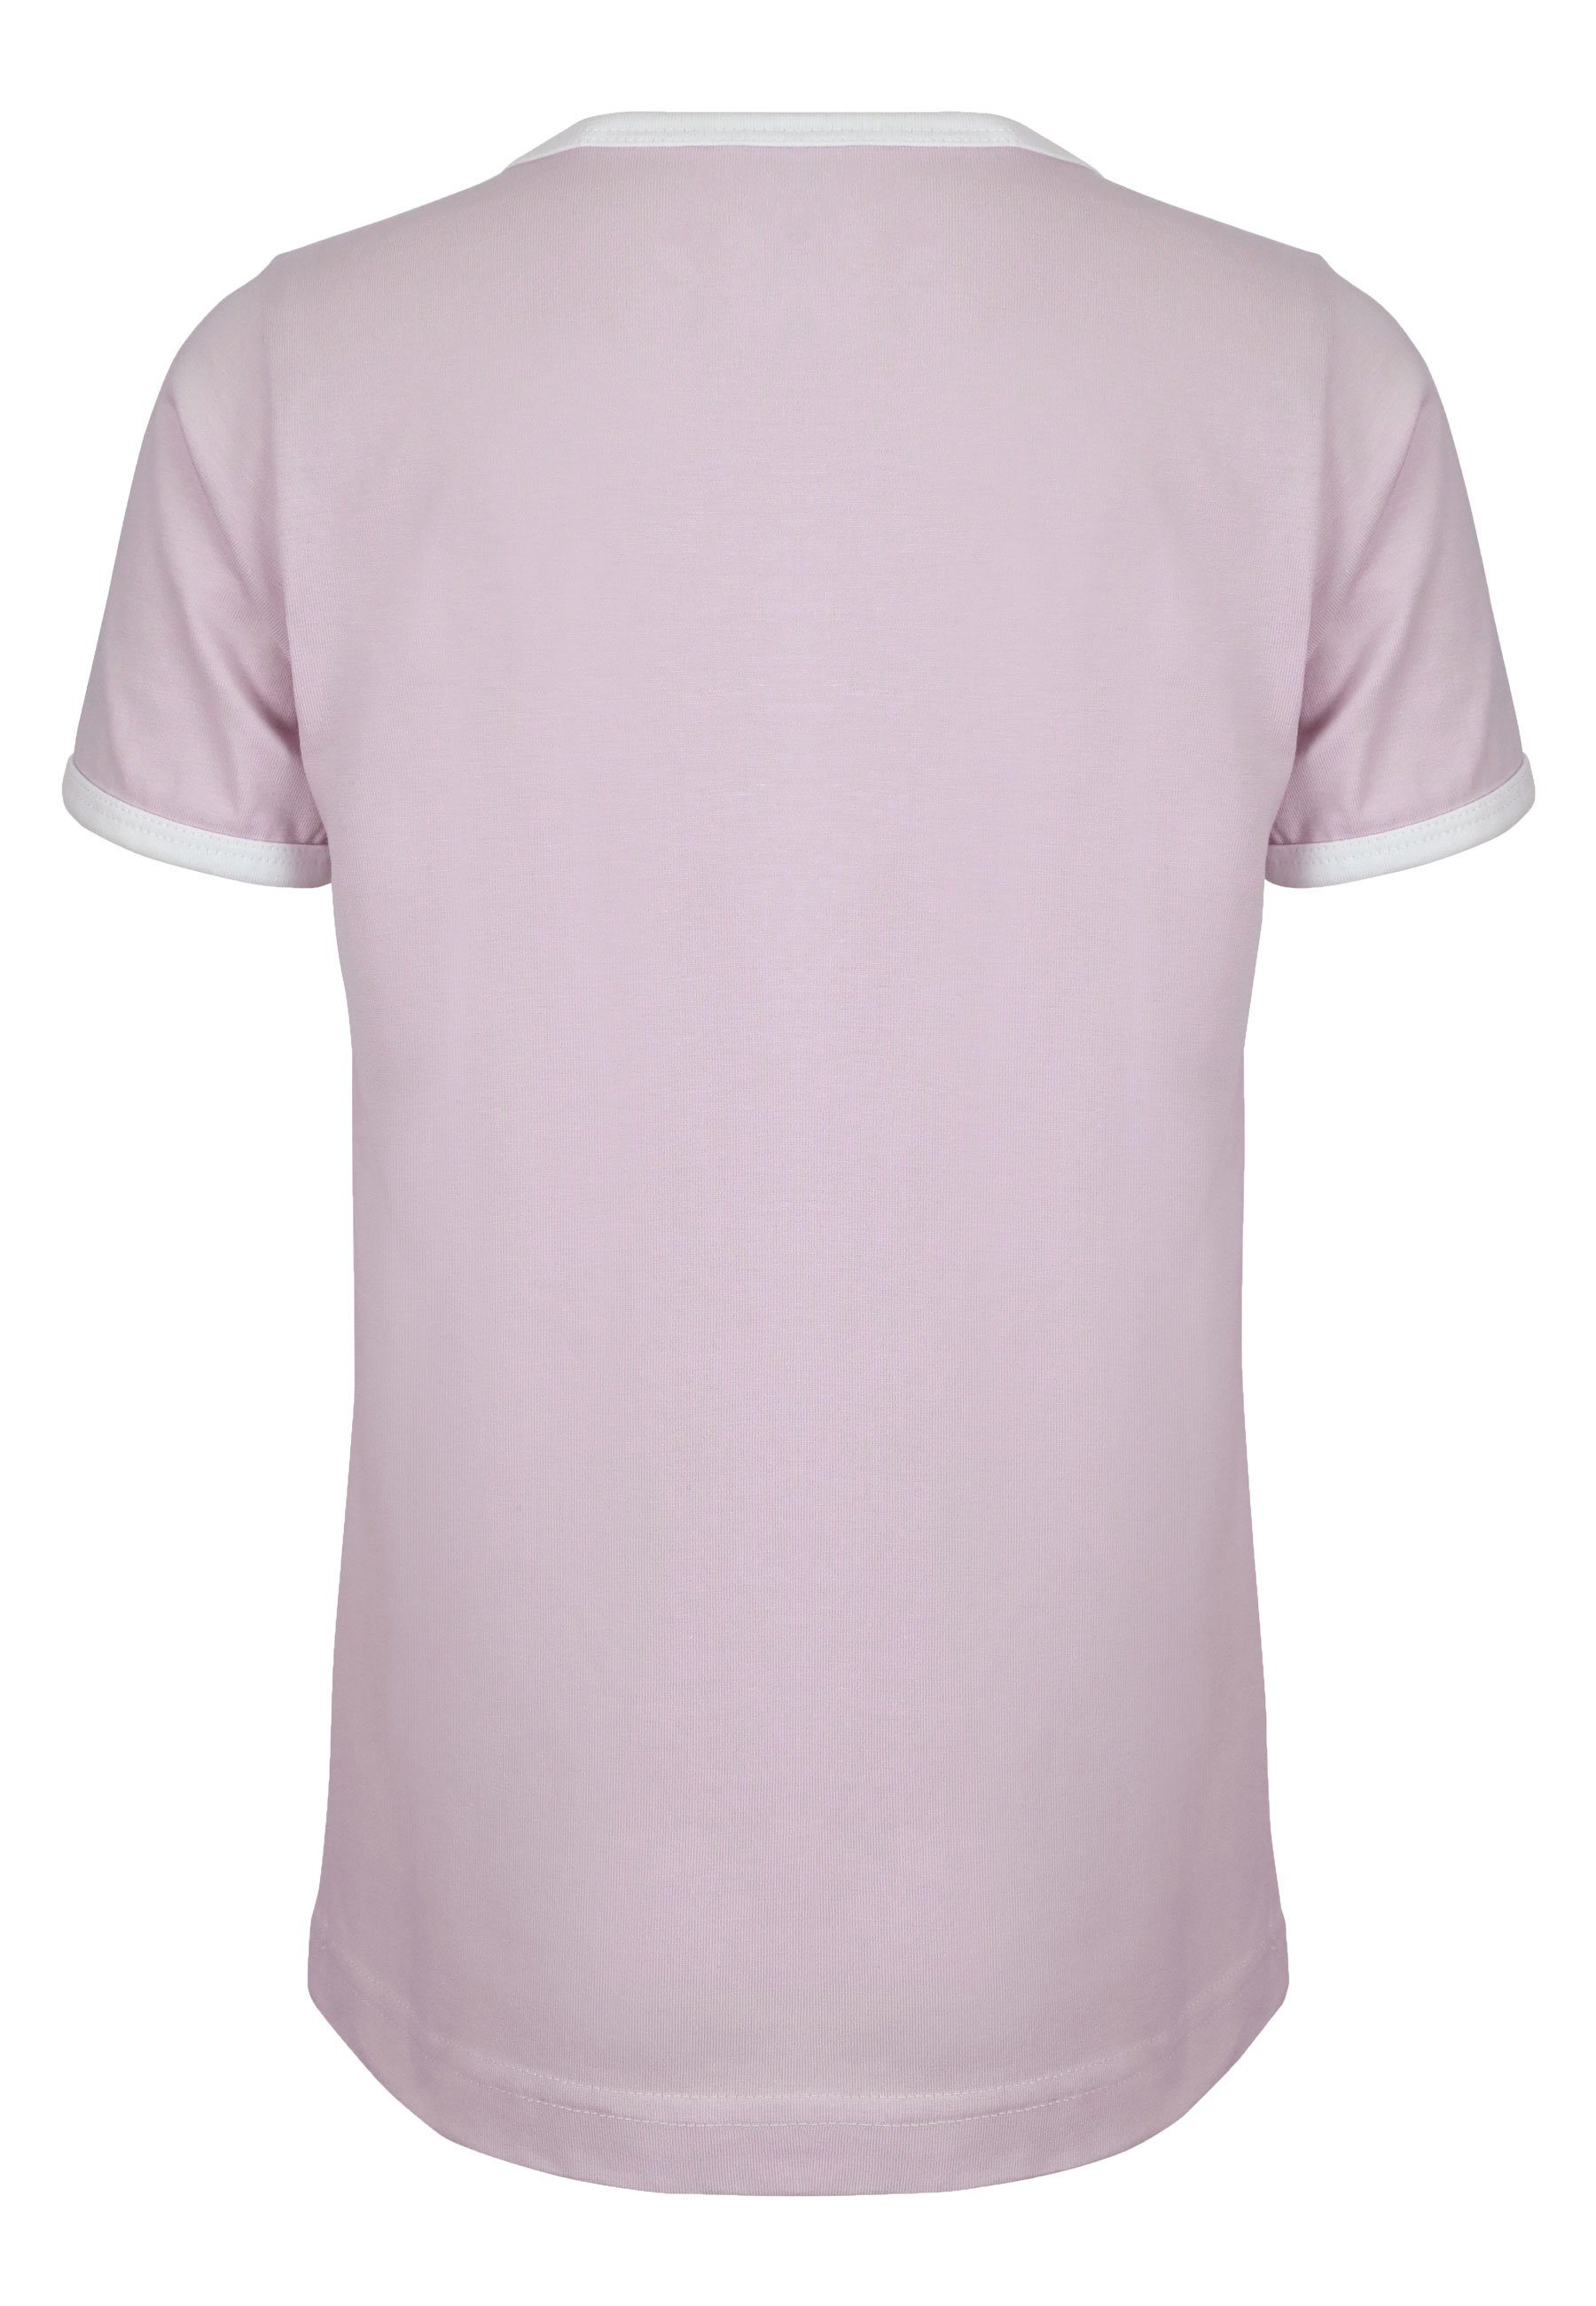 tailliert Strand Zum leicht Fahrrad lavender T-Shirt Brust Elkline Print